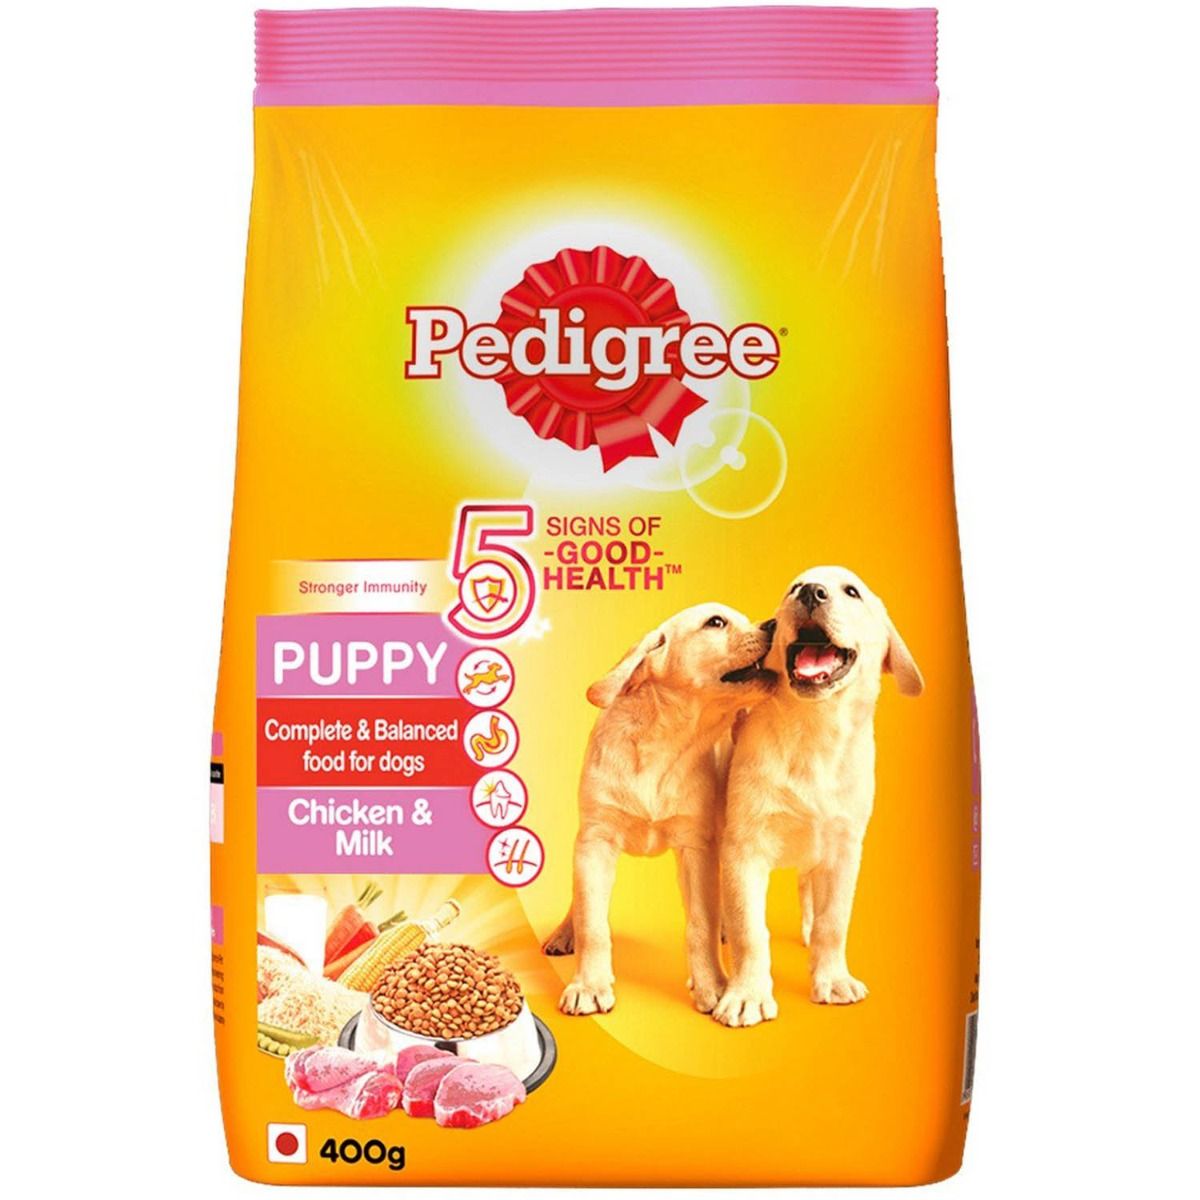 Buy Pedigree Puppy Dog Food With Chicken & Milk, 400 gm Online